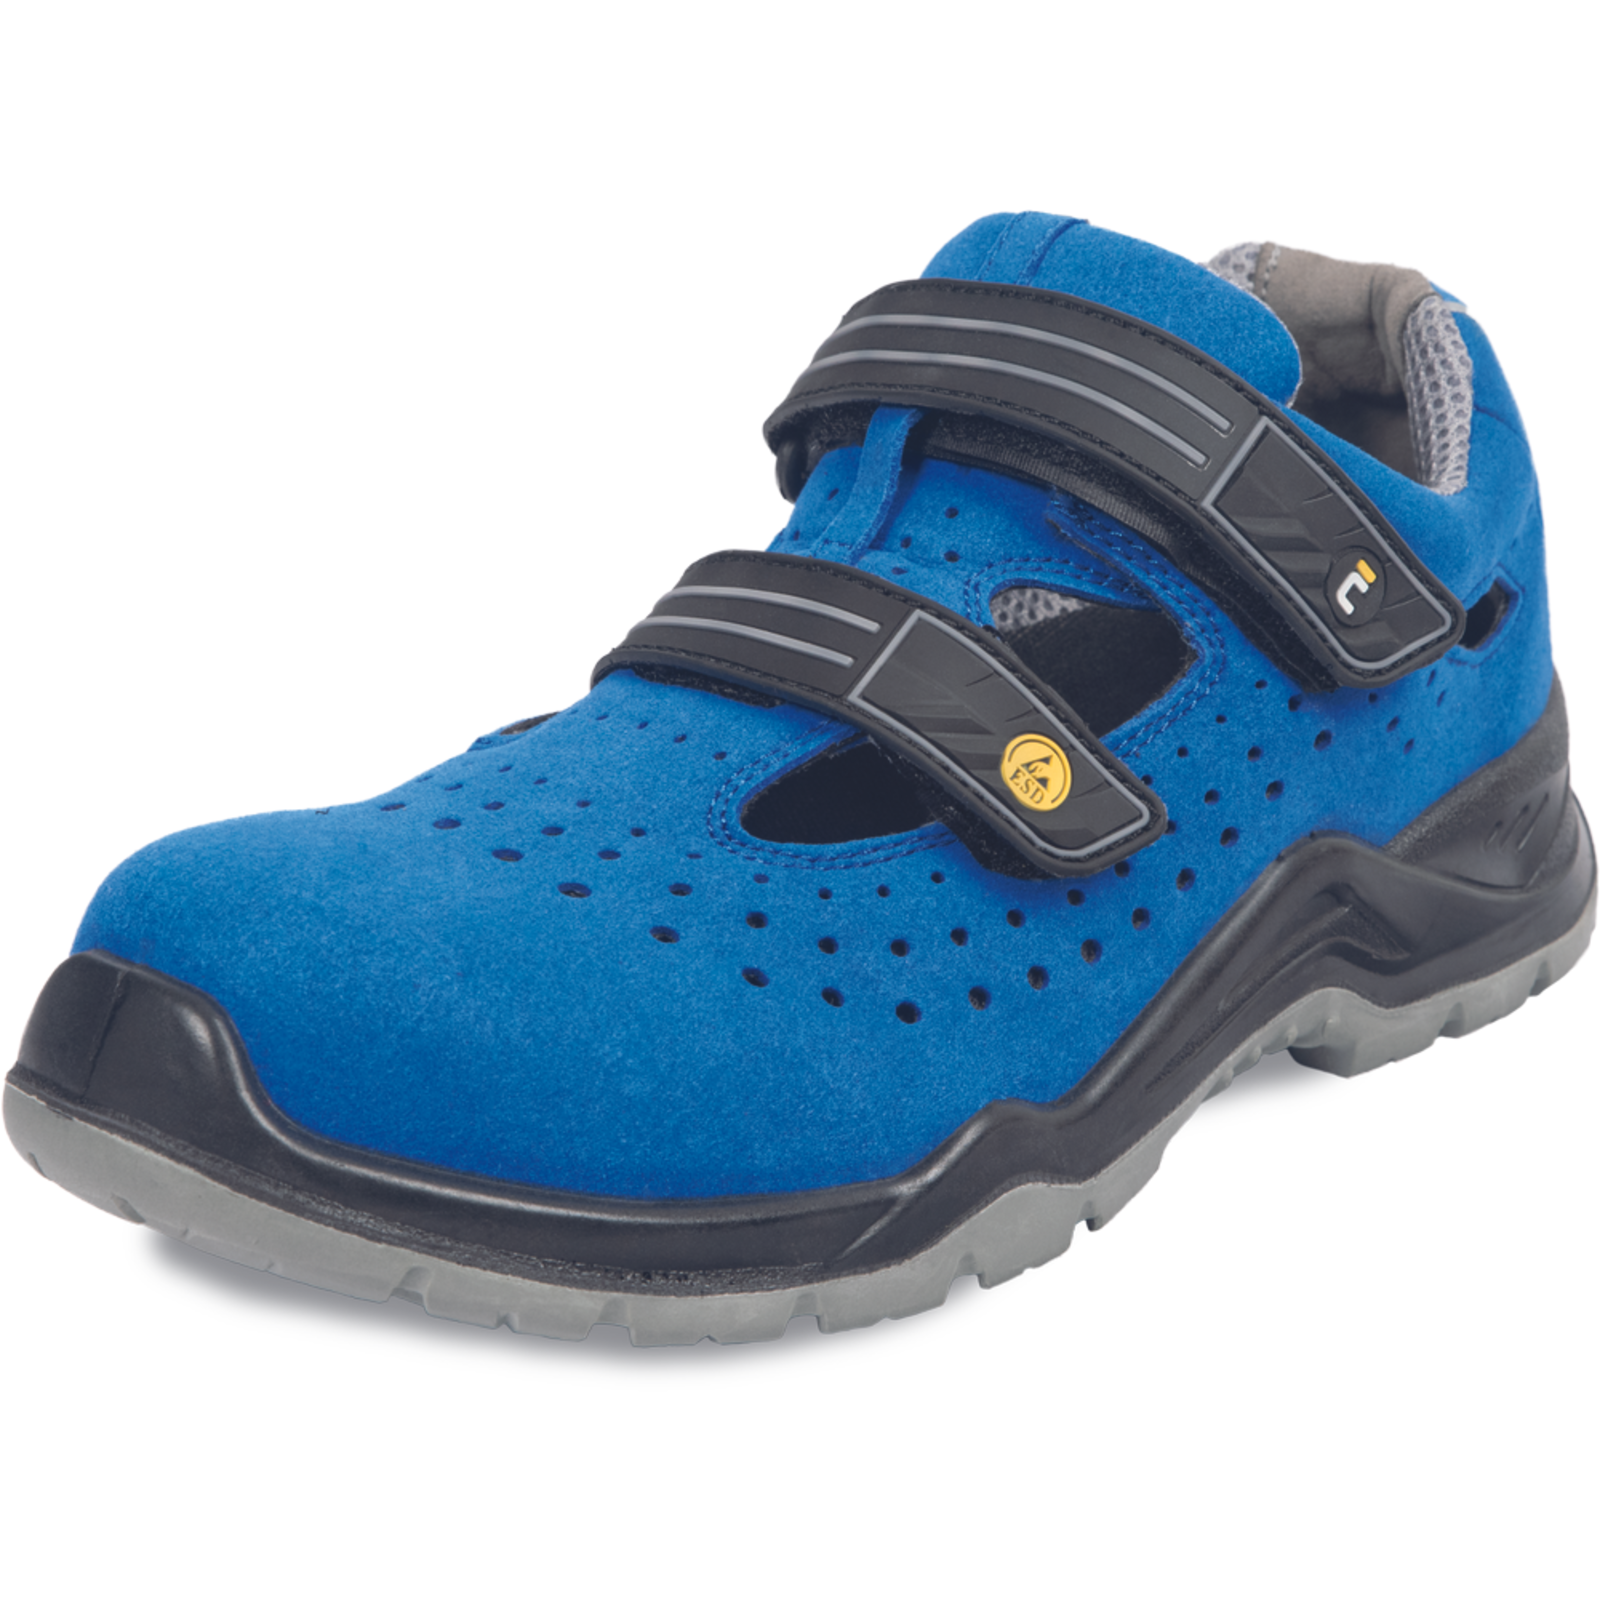 Bezpečnostné pracovné sandále Cerva Hagewill S1P - veľkosť: 46, farba: modrá